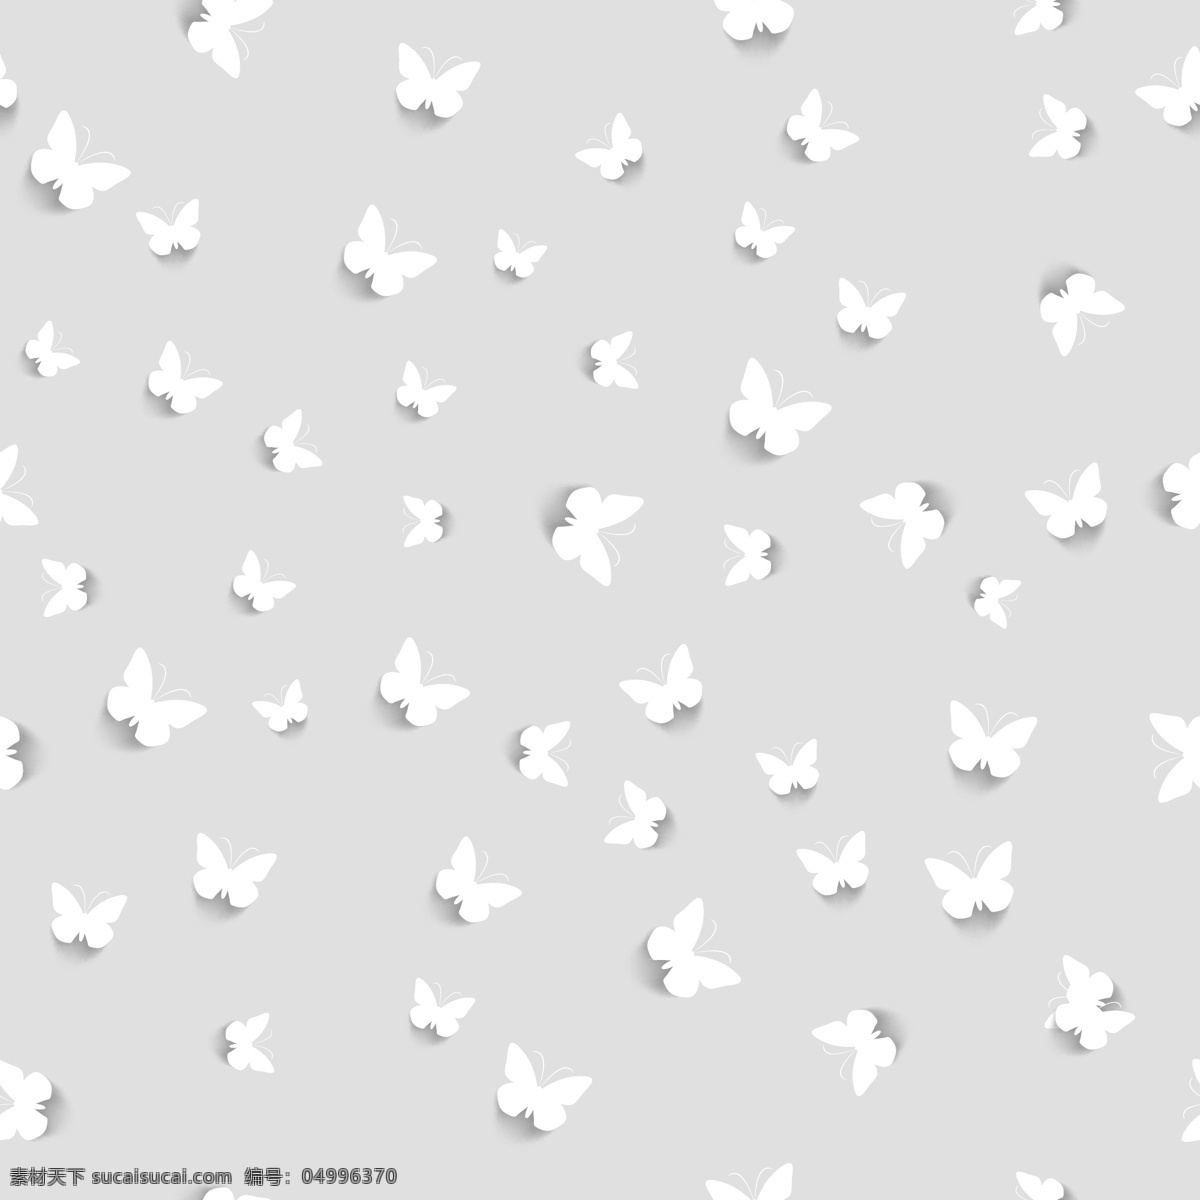 白 蝴蝶 图案 背景 模式 抽象背景 抽象 壁纸 白色背景 白色 无缝图案 无缝 图案背景 背景白色 抽象图案